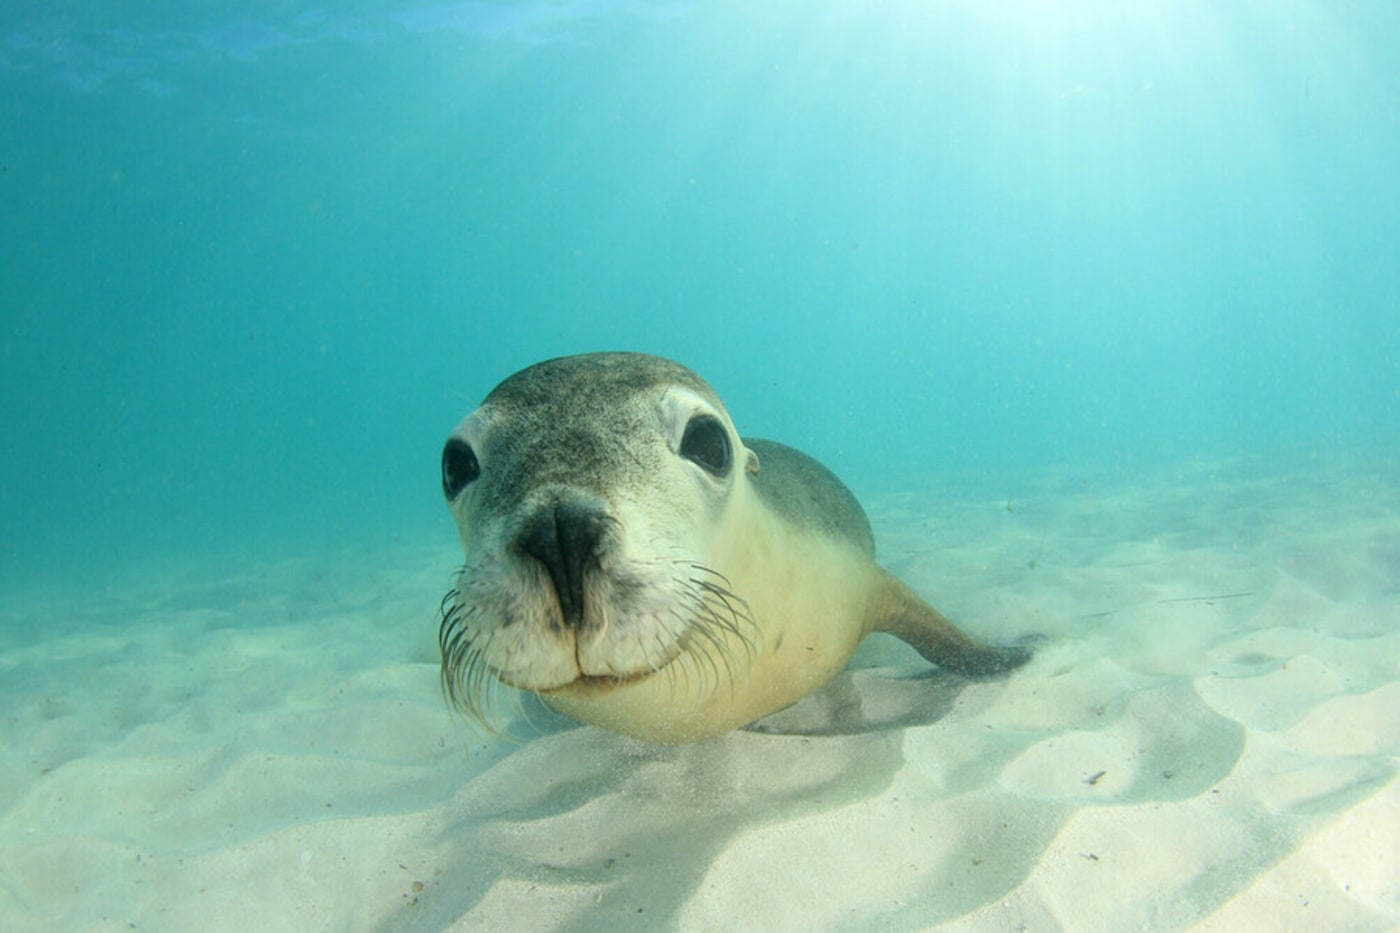 Australian sea lion swimming in the ocean